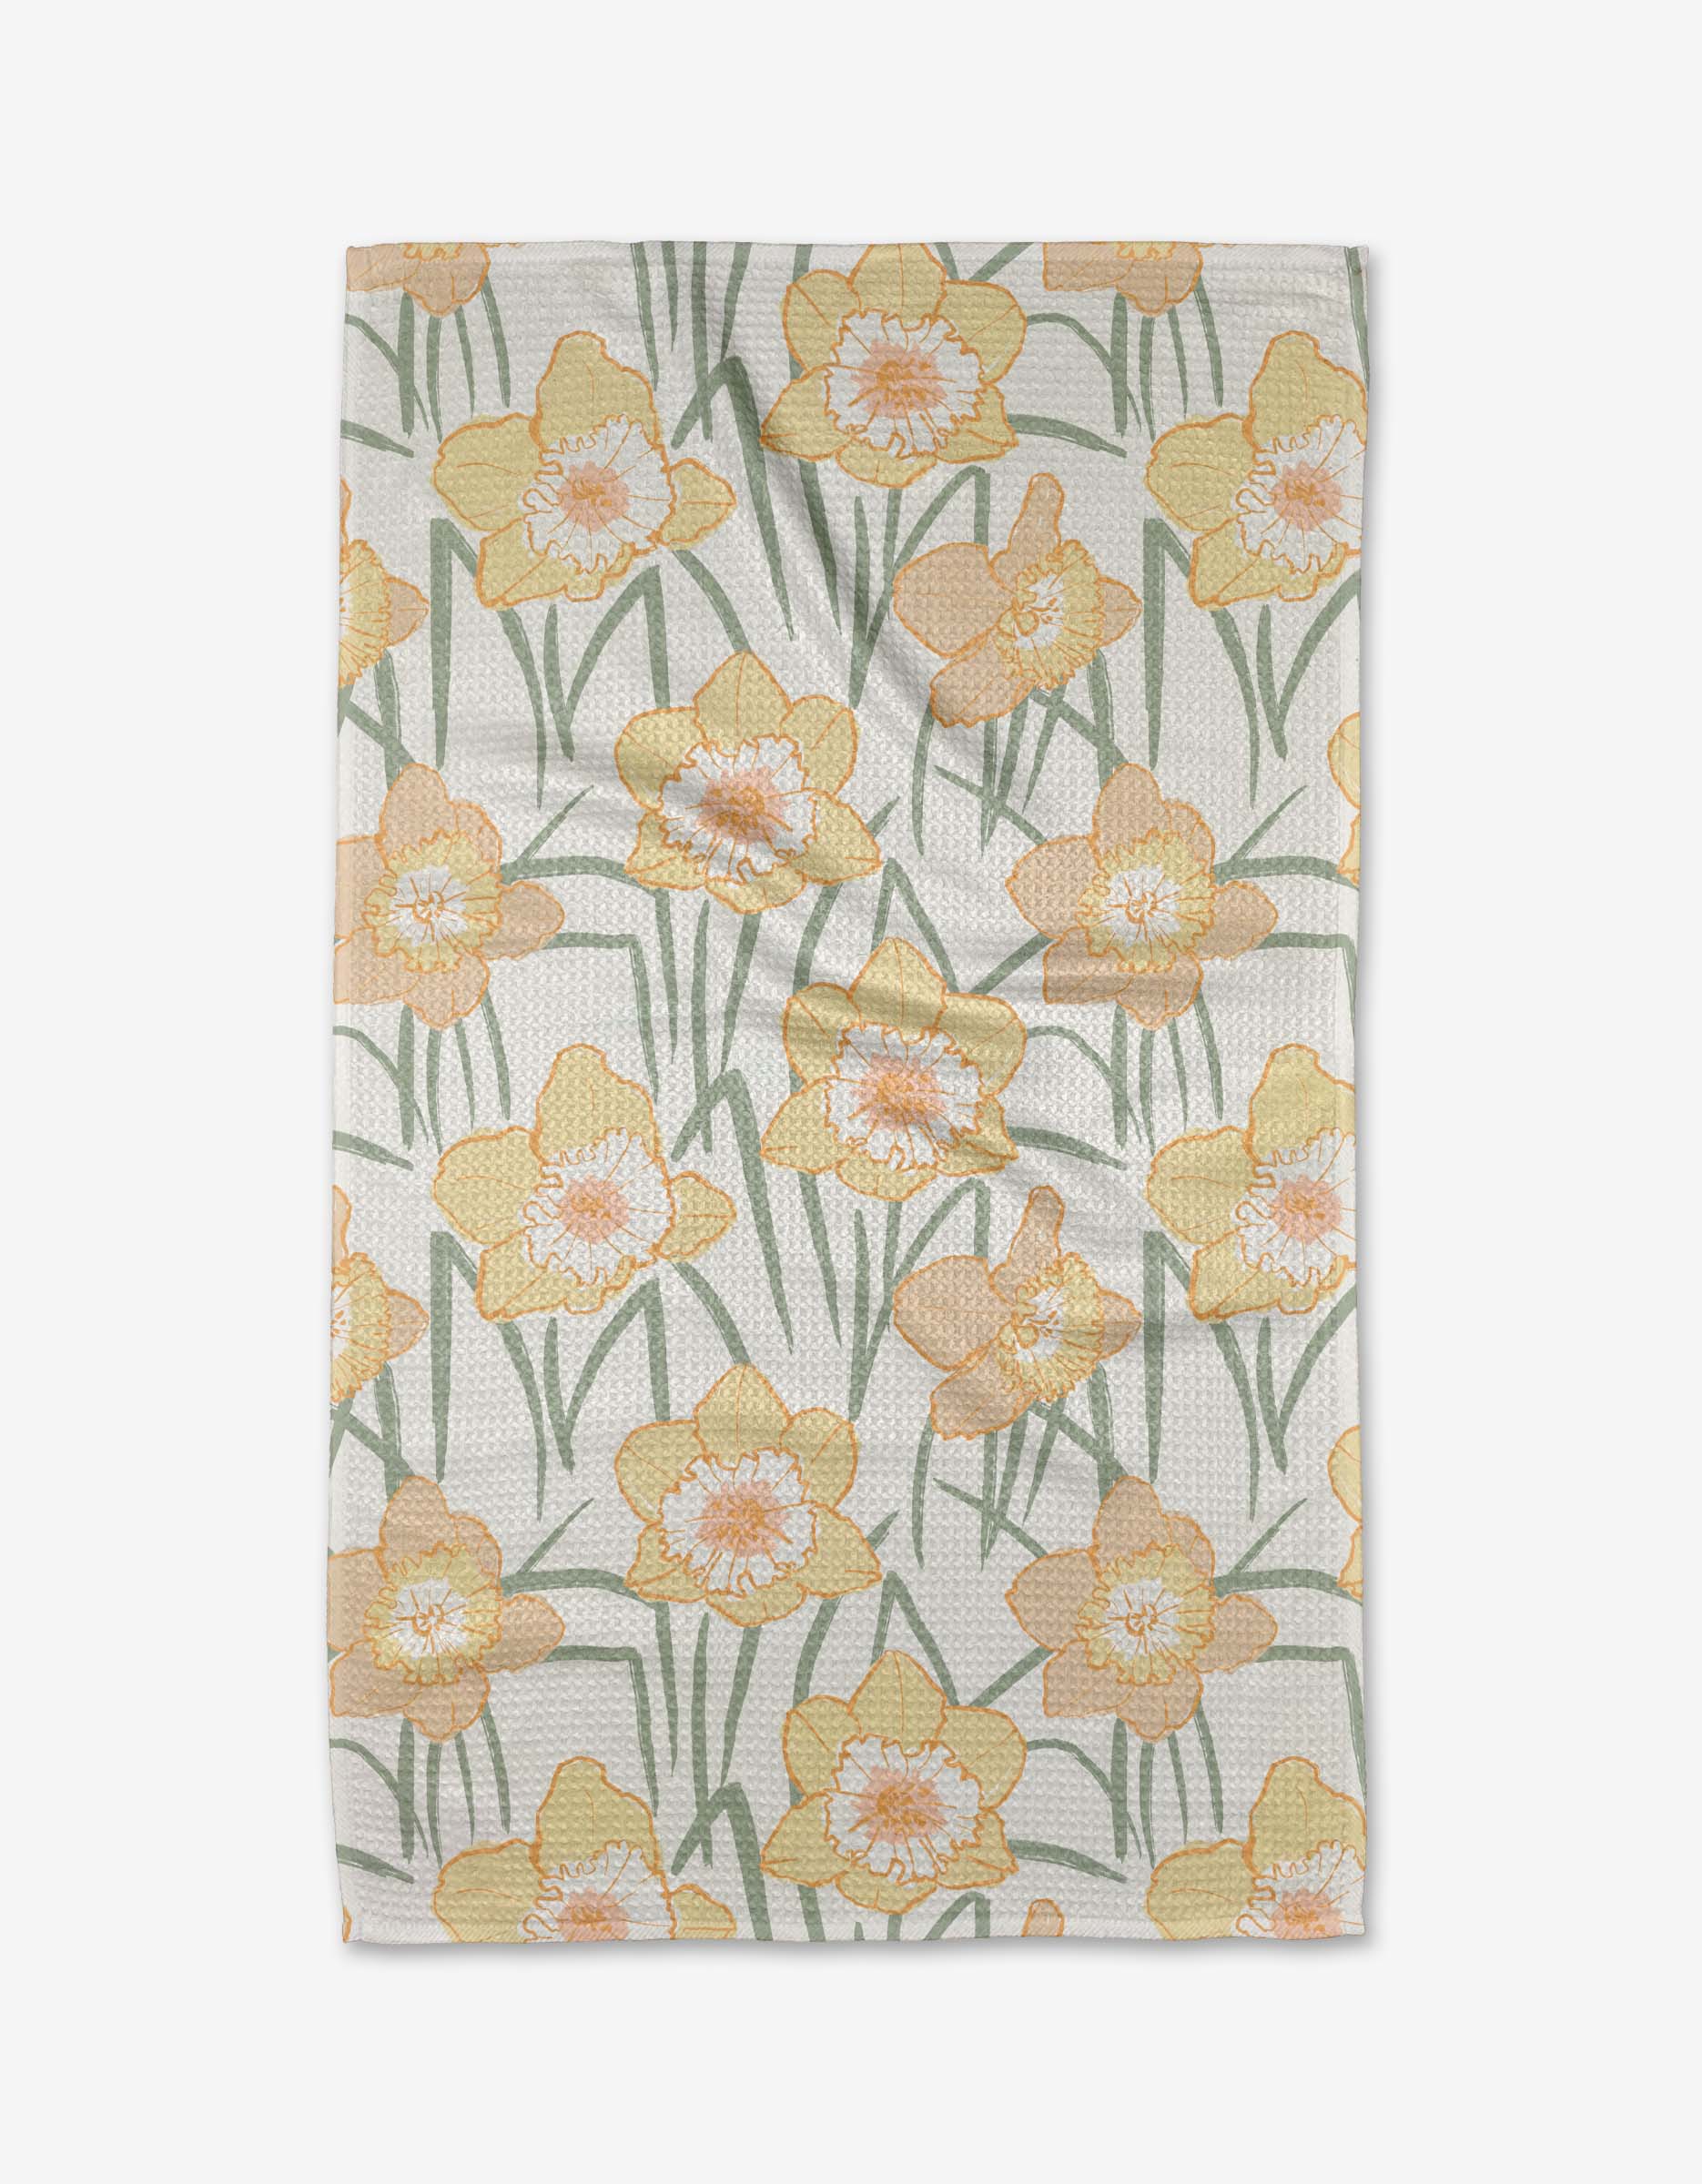 Spring Daffodil Fields